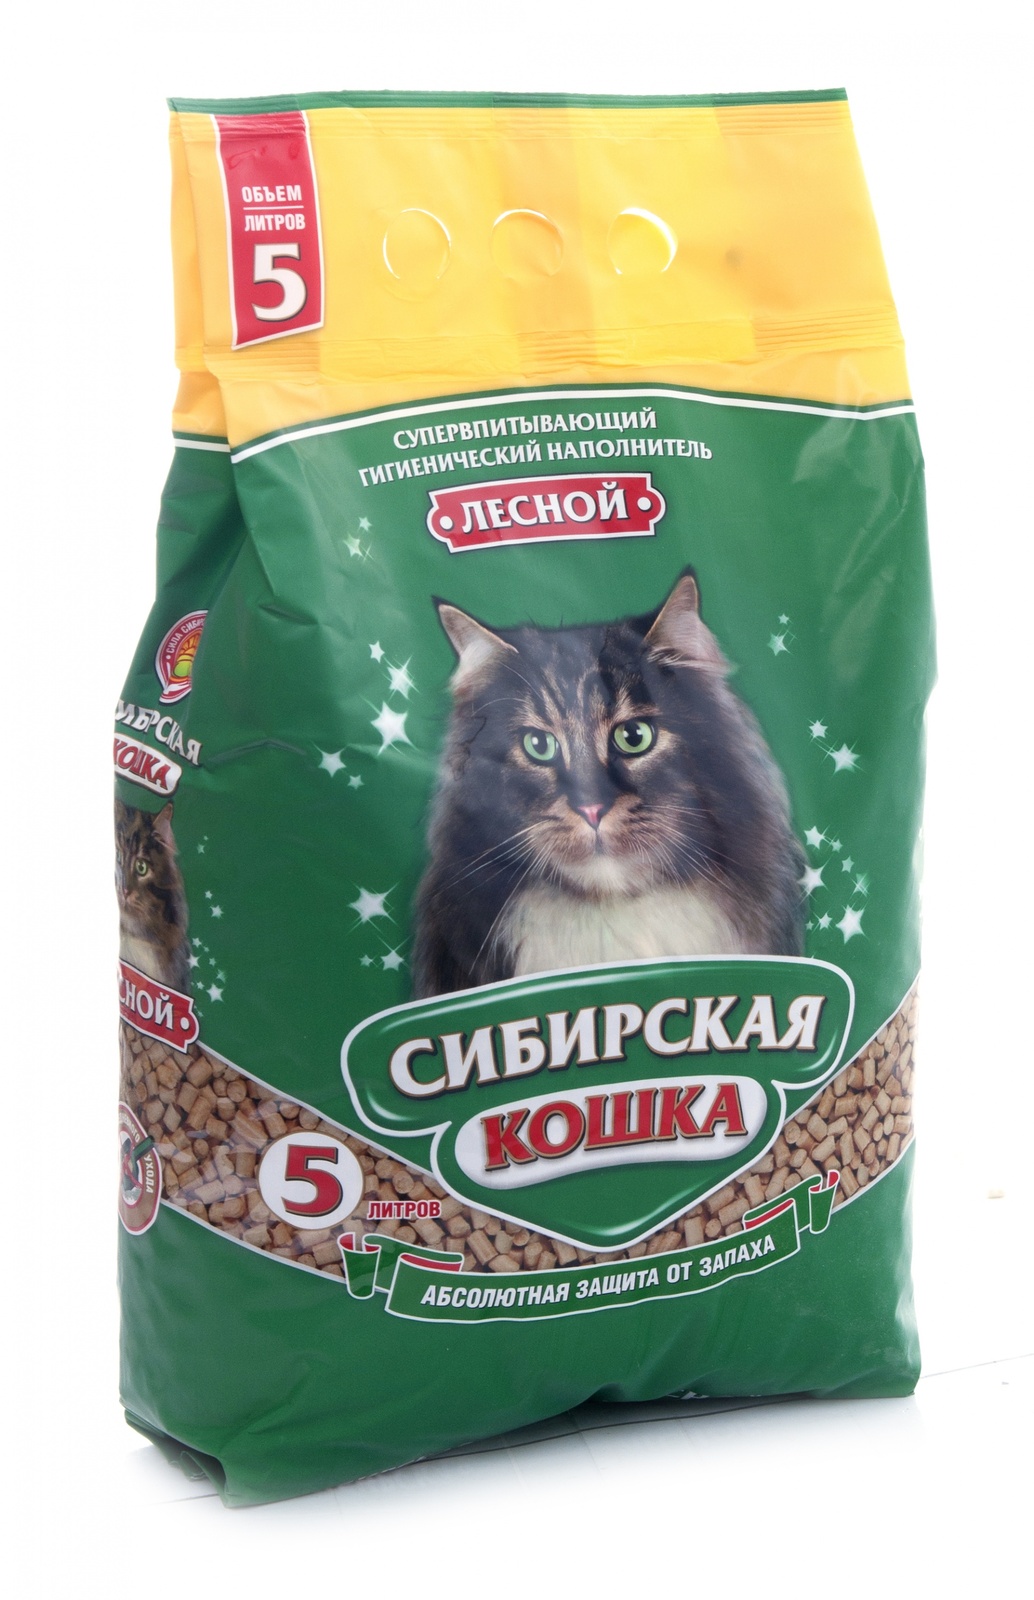 Сибирская кошка древесный наполнитель Лесной | Petshop.ru